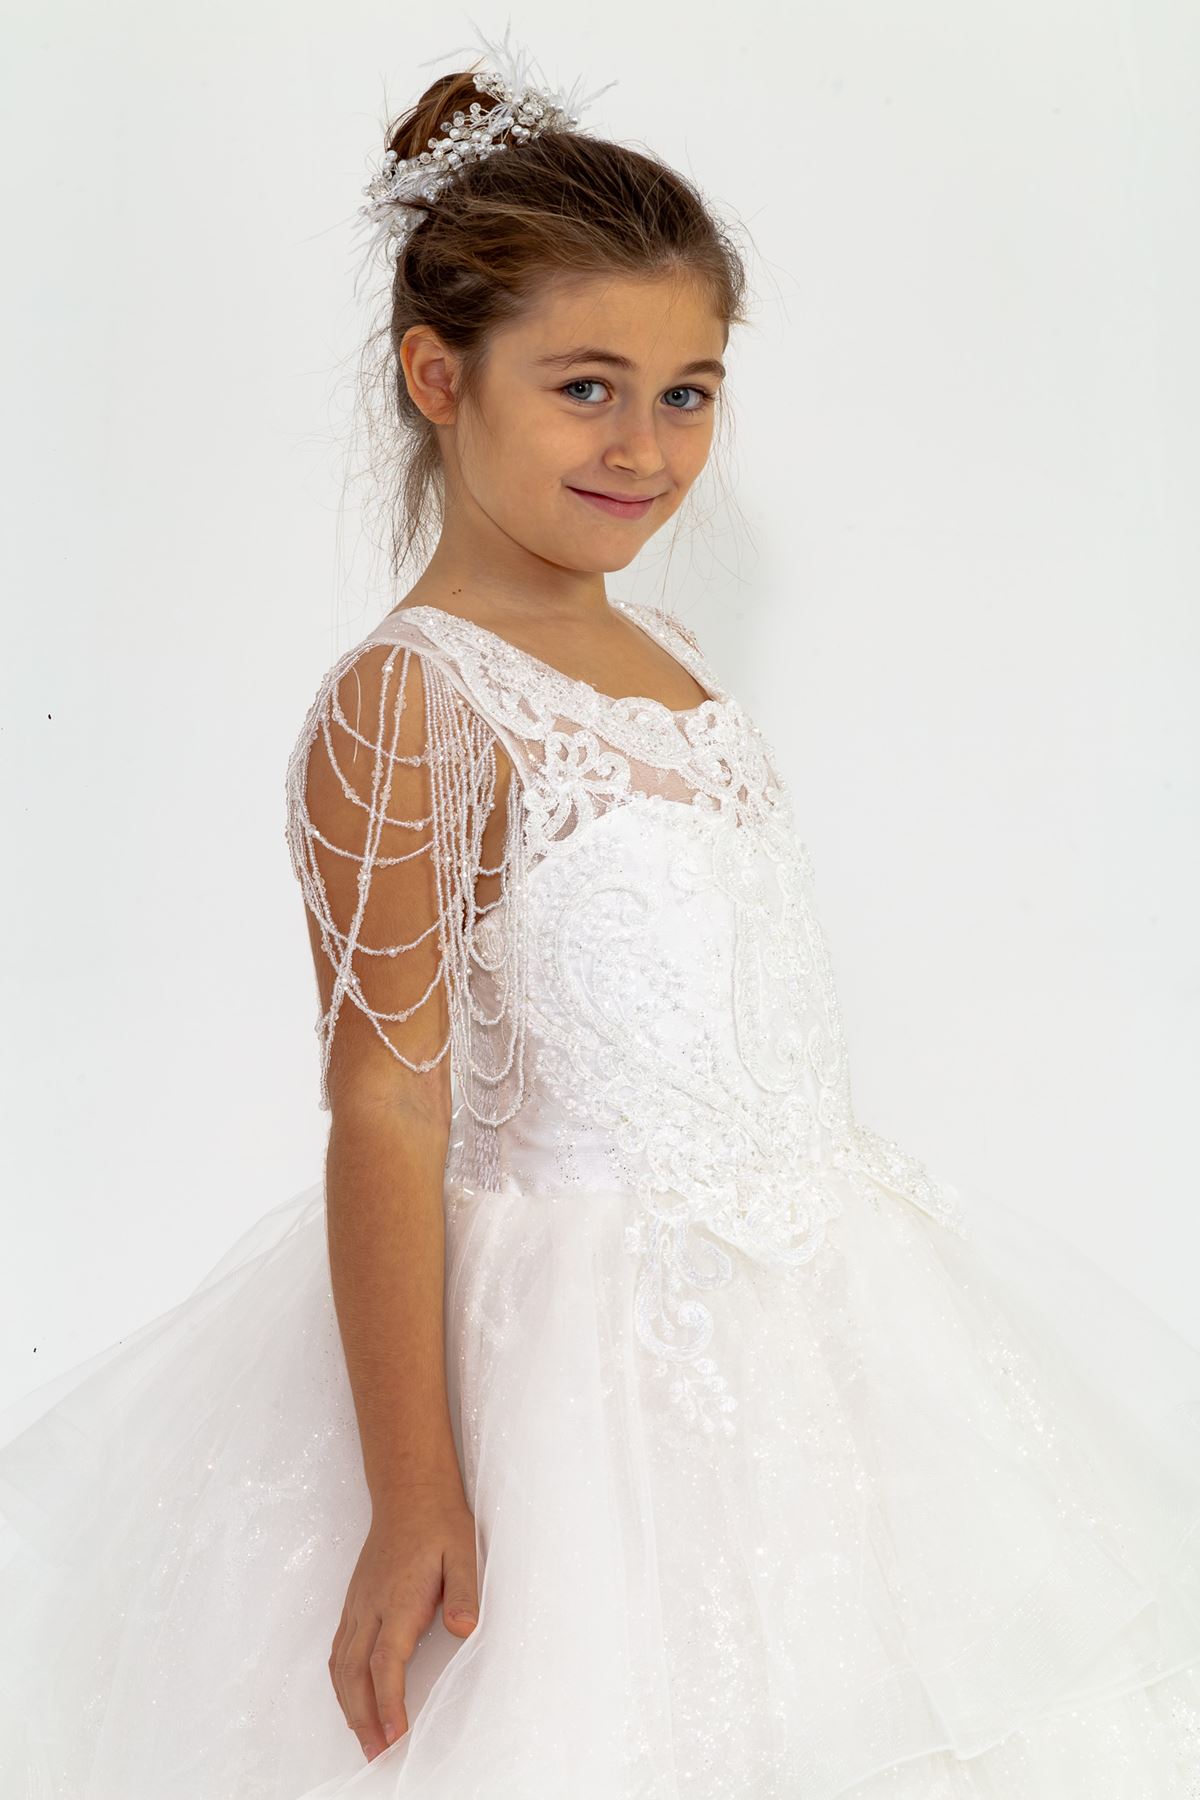 Omuzda Sarkaç Boncuk Detaylı Simli İşlemeli Dantelli Kız Çocuk Kabarık Abiye Elbise 30011 Beyaz